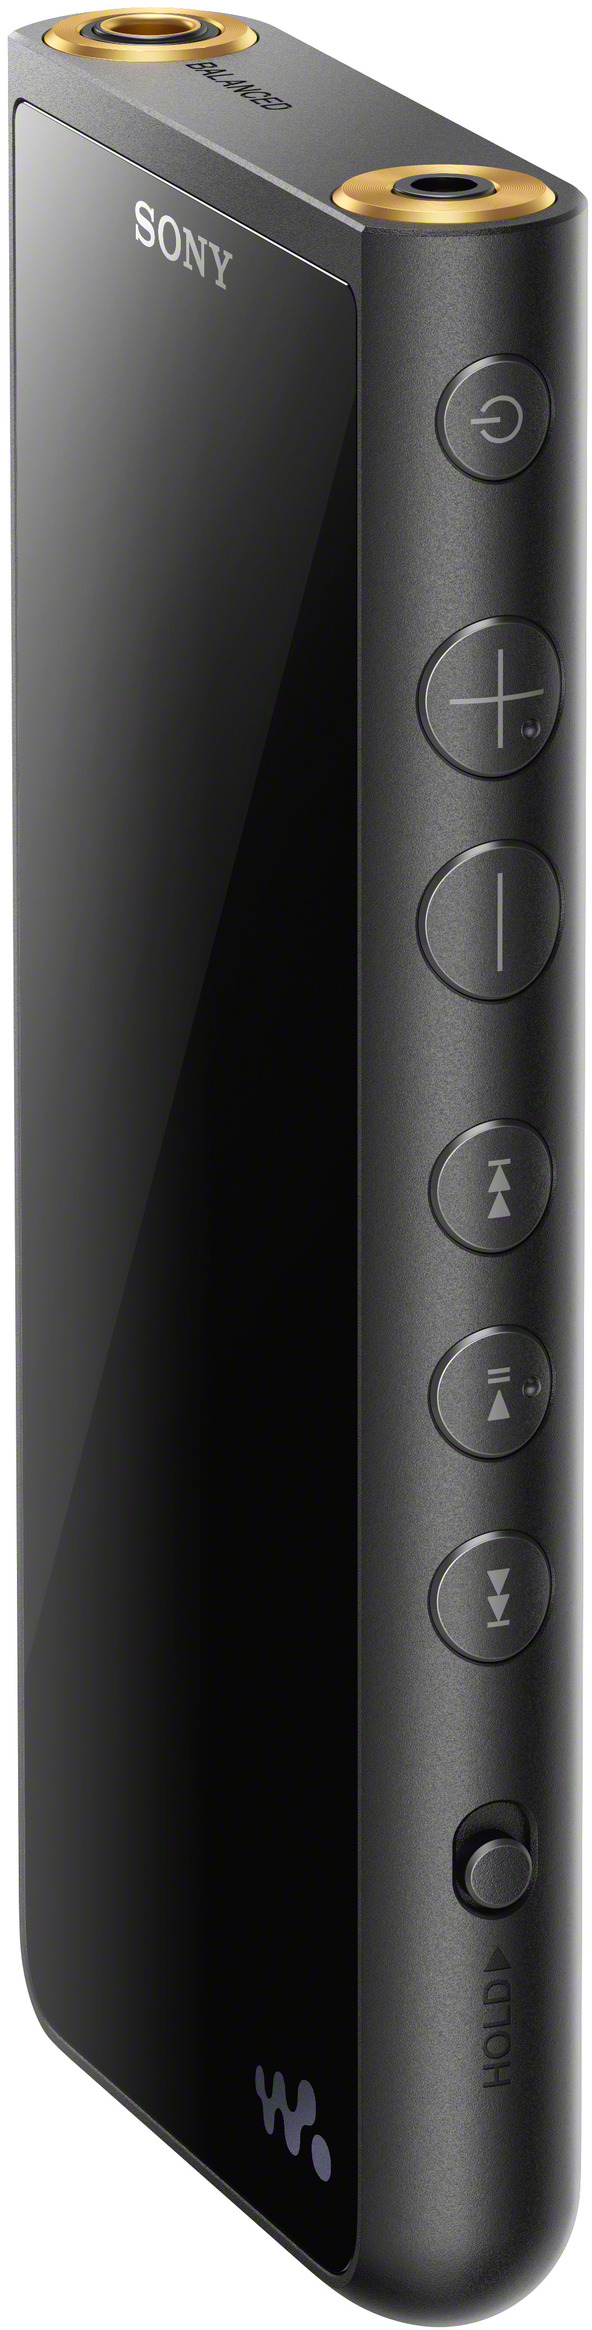 SONY Walkman NW-ZX507 Mp3-Player (64 GB, Schwarz)